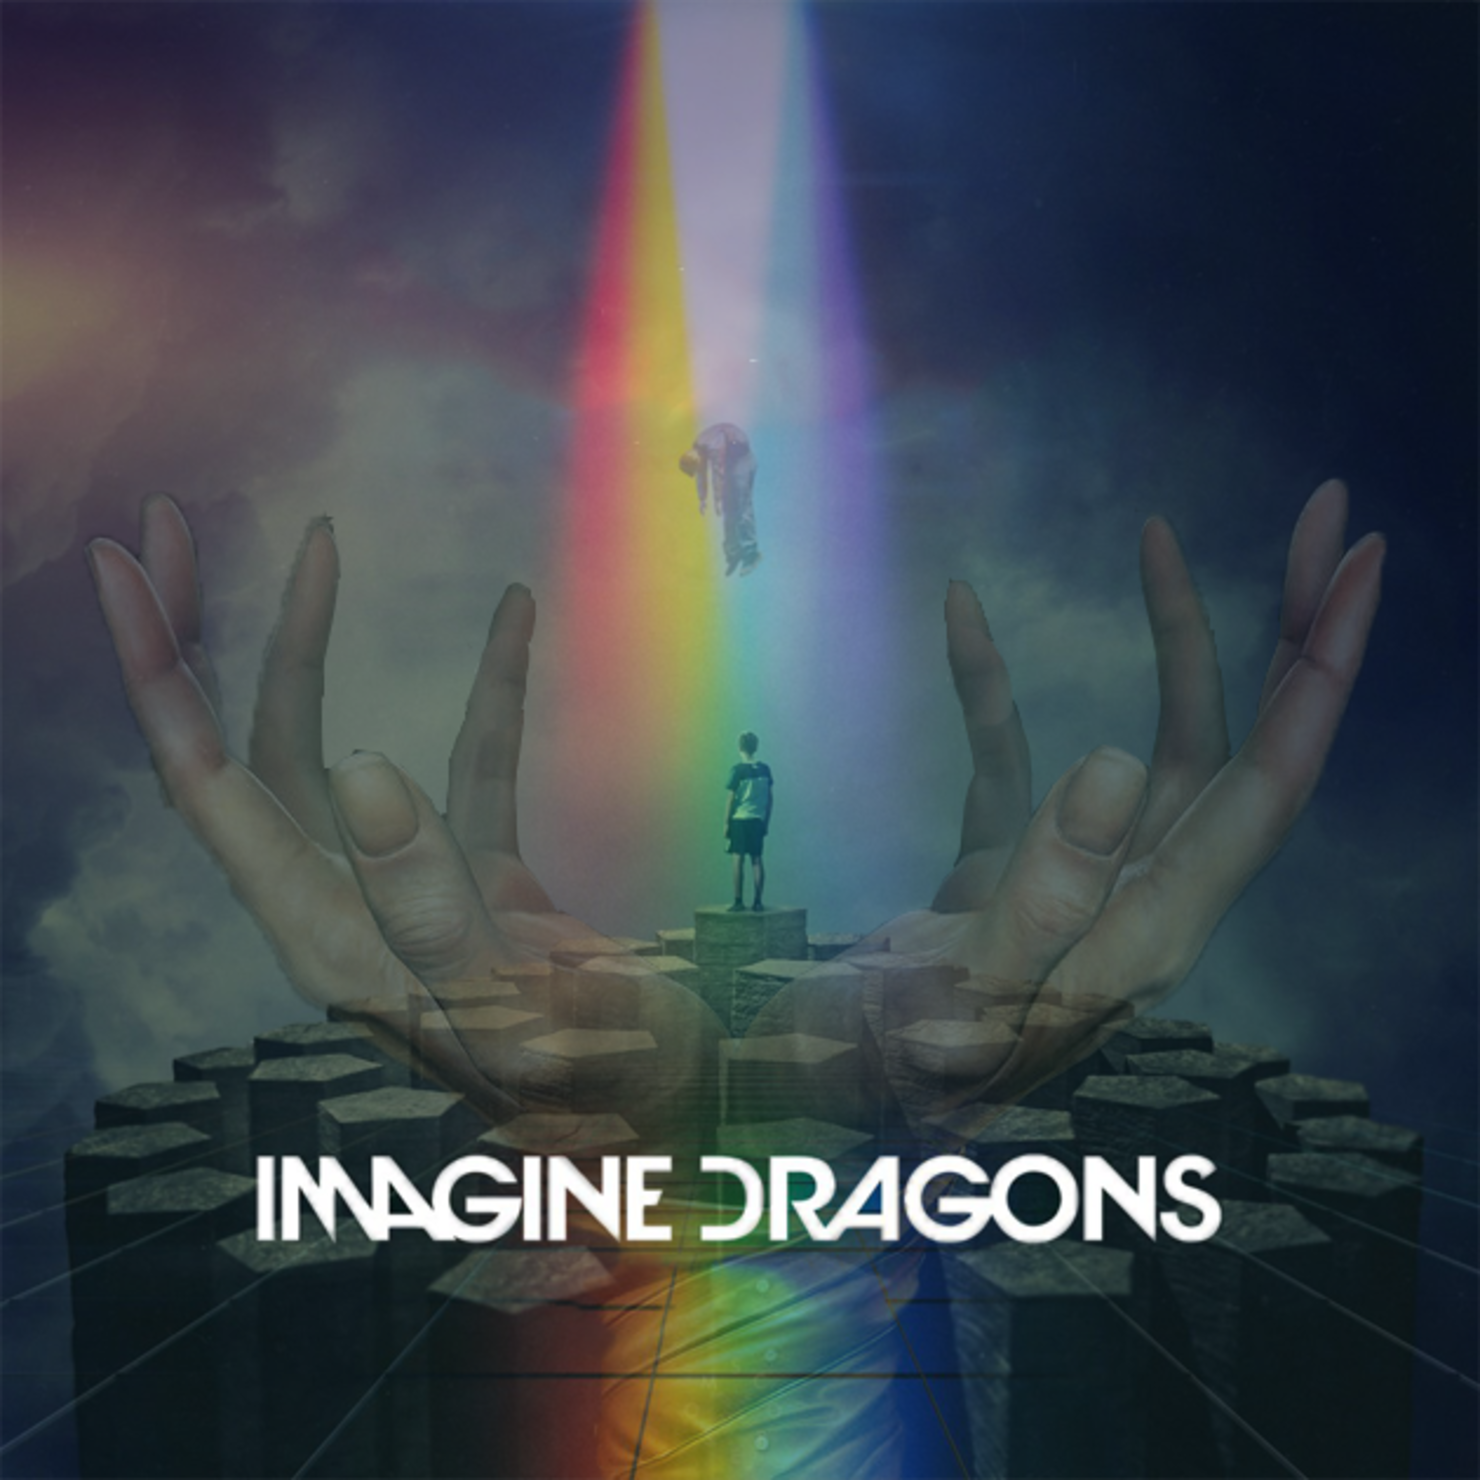 Имаджин драгон обложка. Imagine Dragons обложки. Imagine Dragons альбомы. Enemy imagine Dragons обложка.